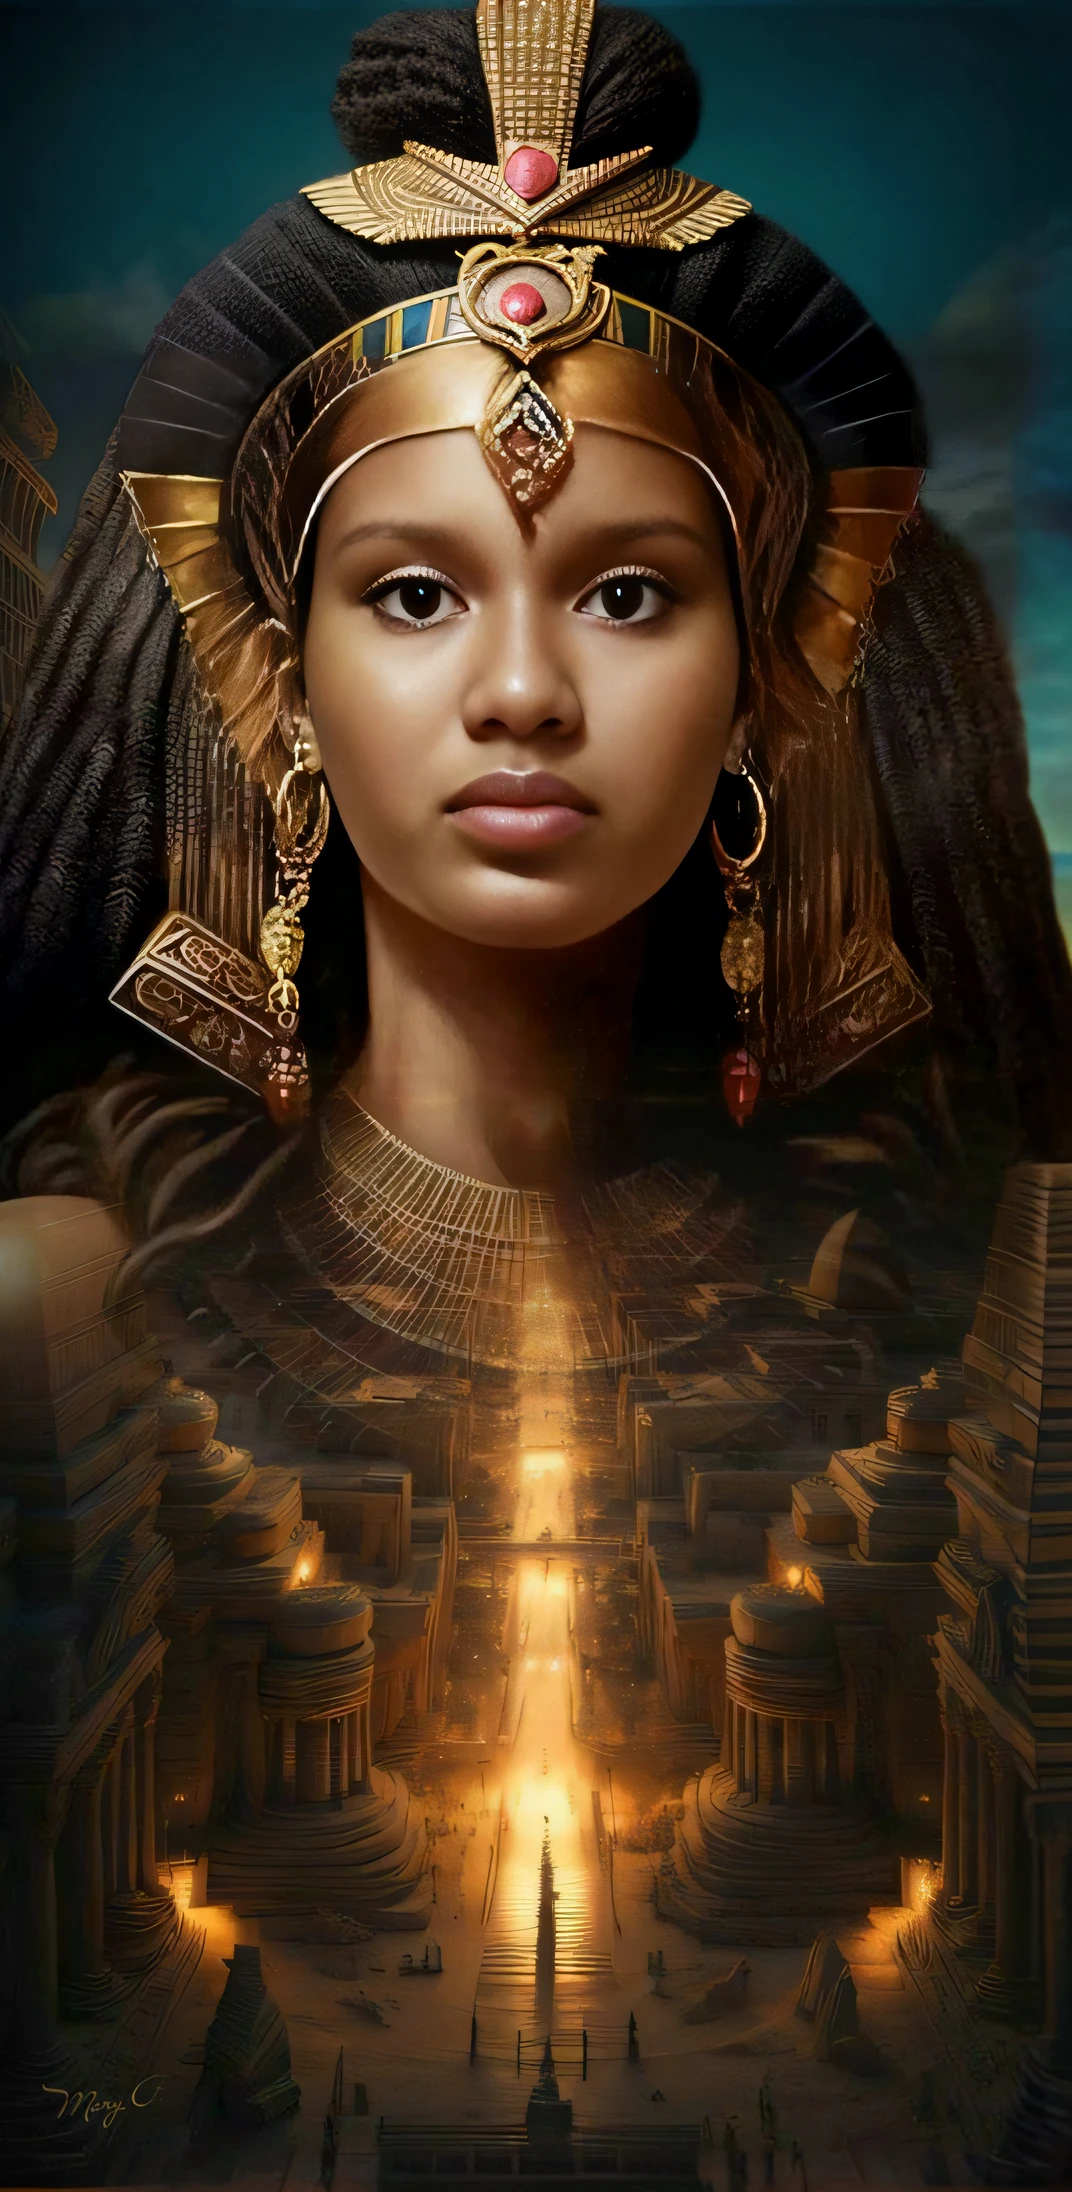 戴着金色头饰和金色王冠的女人, 令人惊叹的女神肖像, 古代女神, 黑皮肤女爱情女神, 凯美提克, 古代公主礼部, 非洲女王, 黑人艾玛沃特森扮演埃及人, 美丽女神的肖像, 美丽的女神, 女王女神, 埃及公主, 非洲黑公主, 非洲中心神秘主义, 女神的肖像